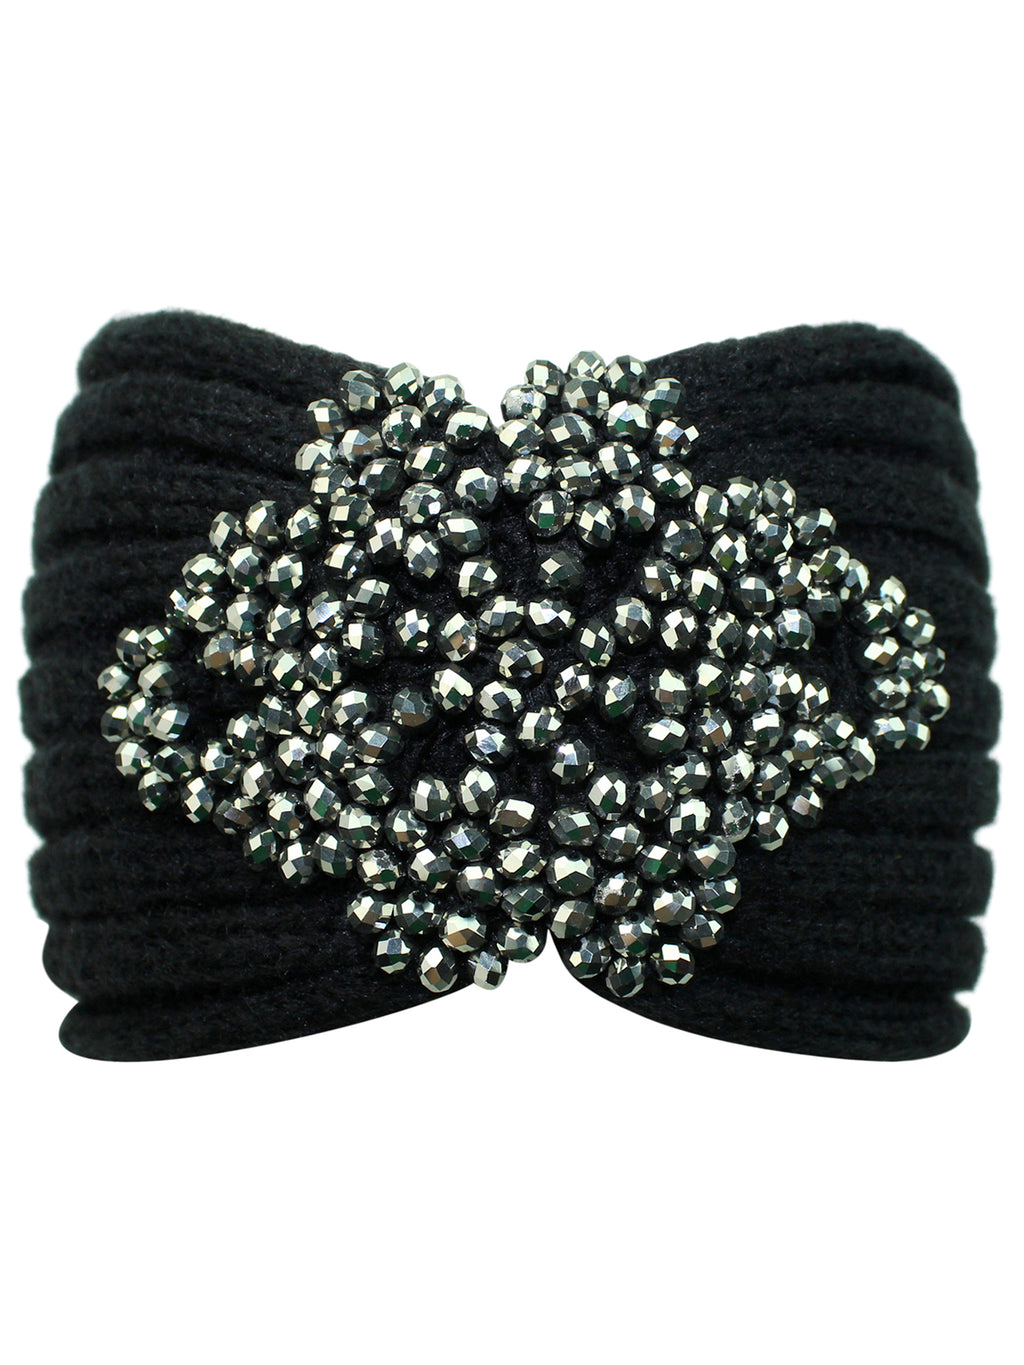 Black Knit Headband With Beaded Detail